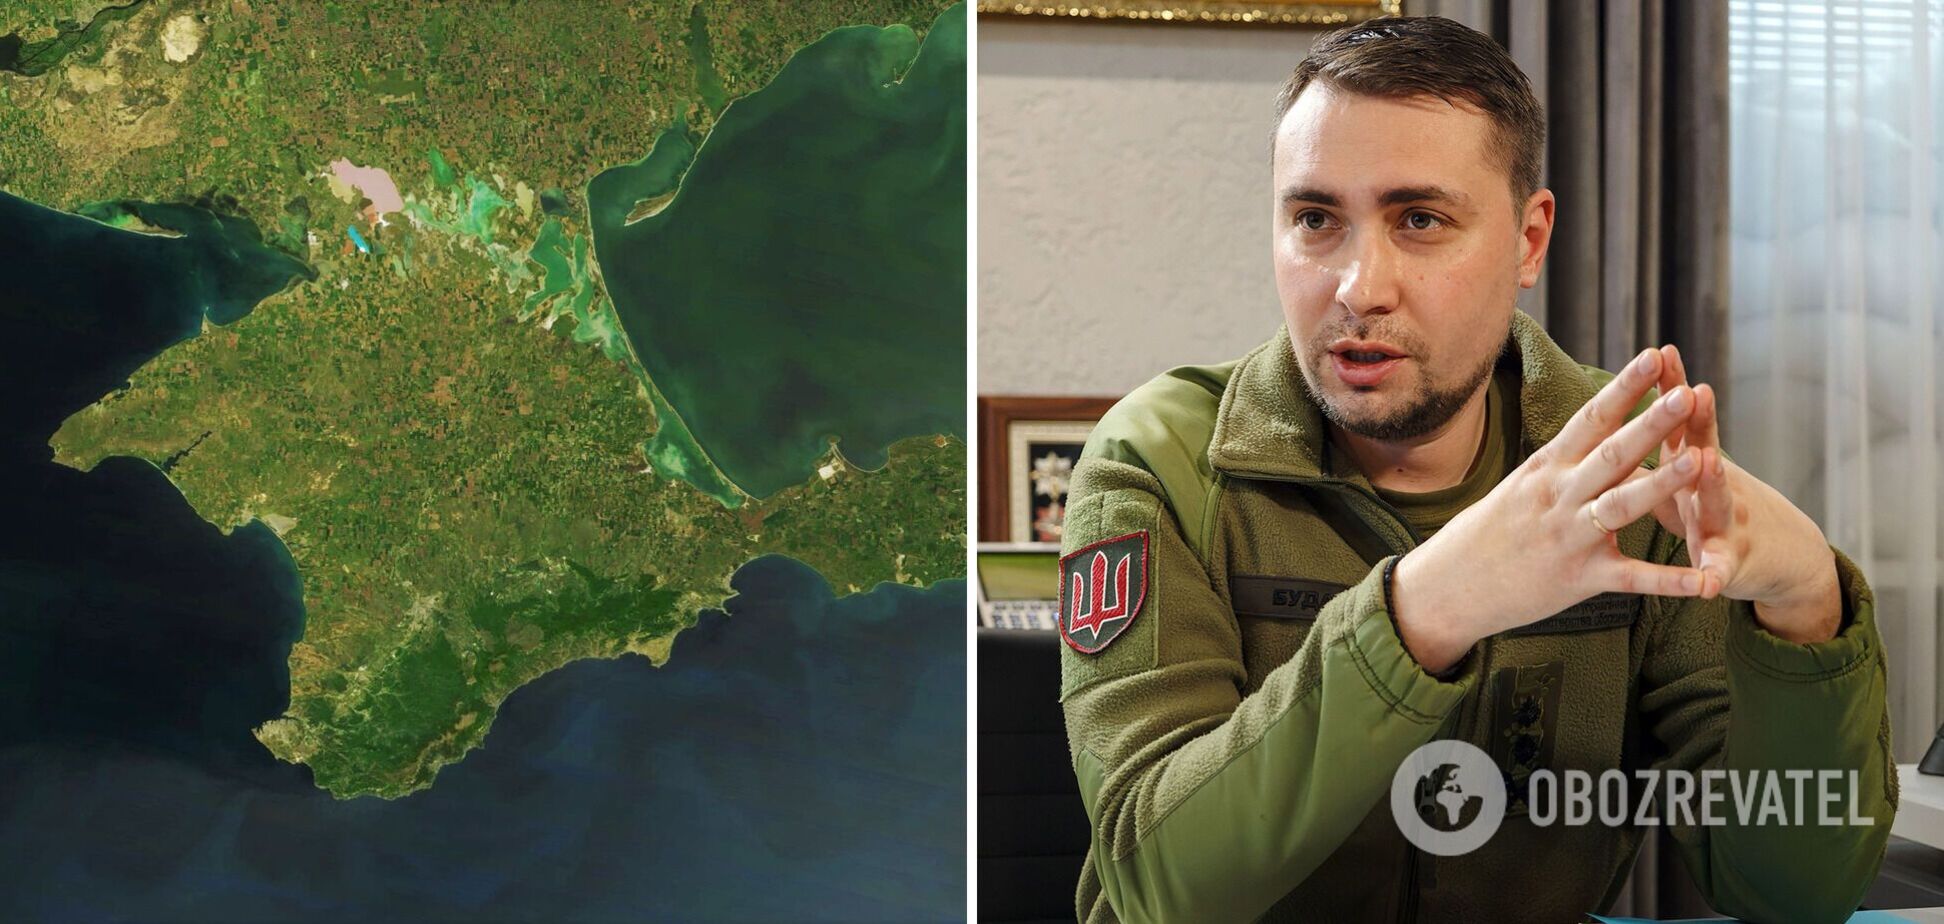 Буданов сделал прогноз насчет завершения войны: ВСУ войдут в Крым весной